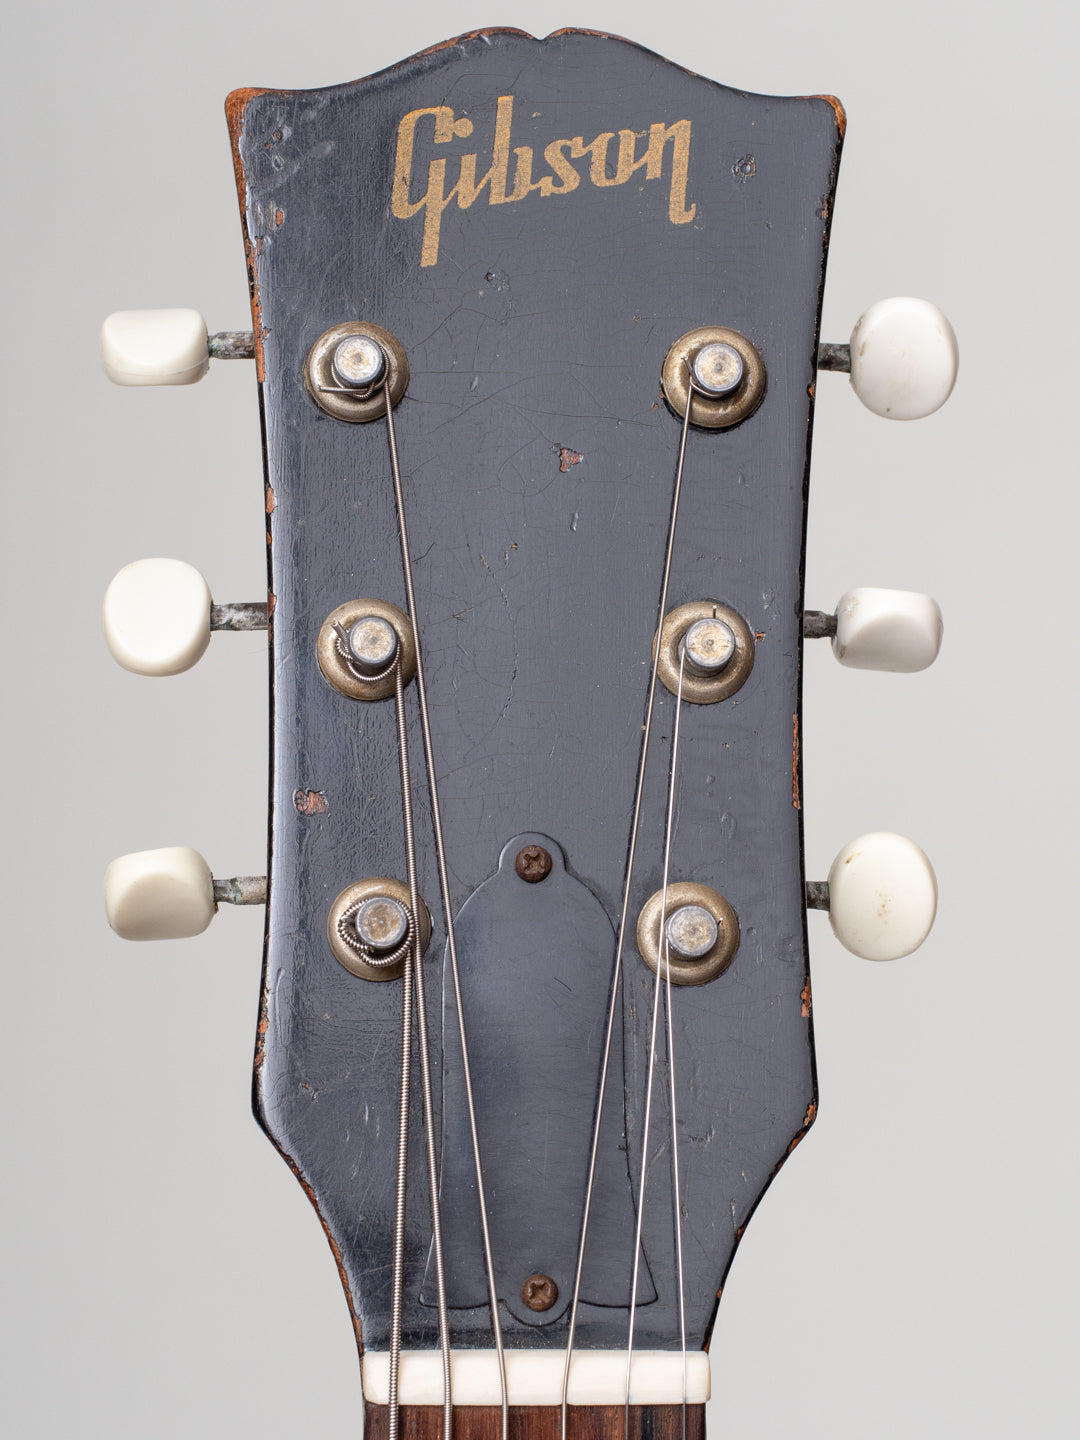 1952 Gibson ES-125